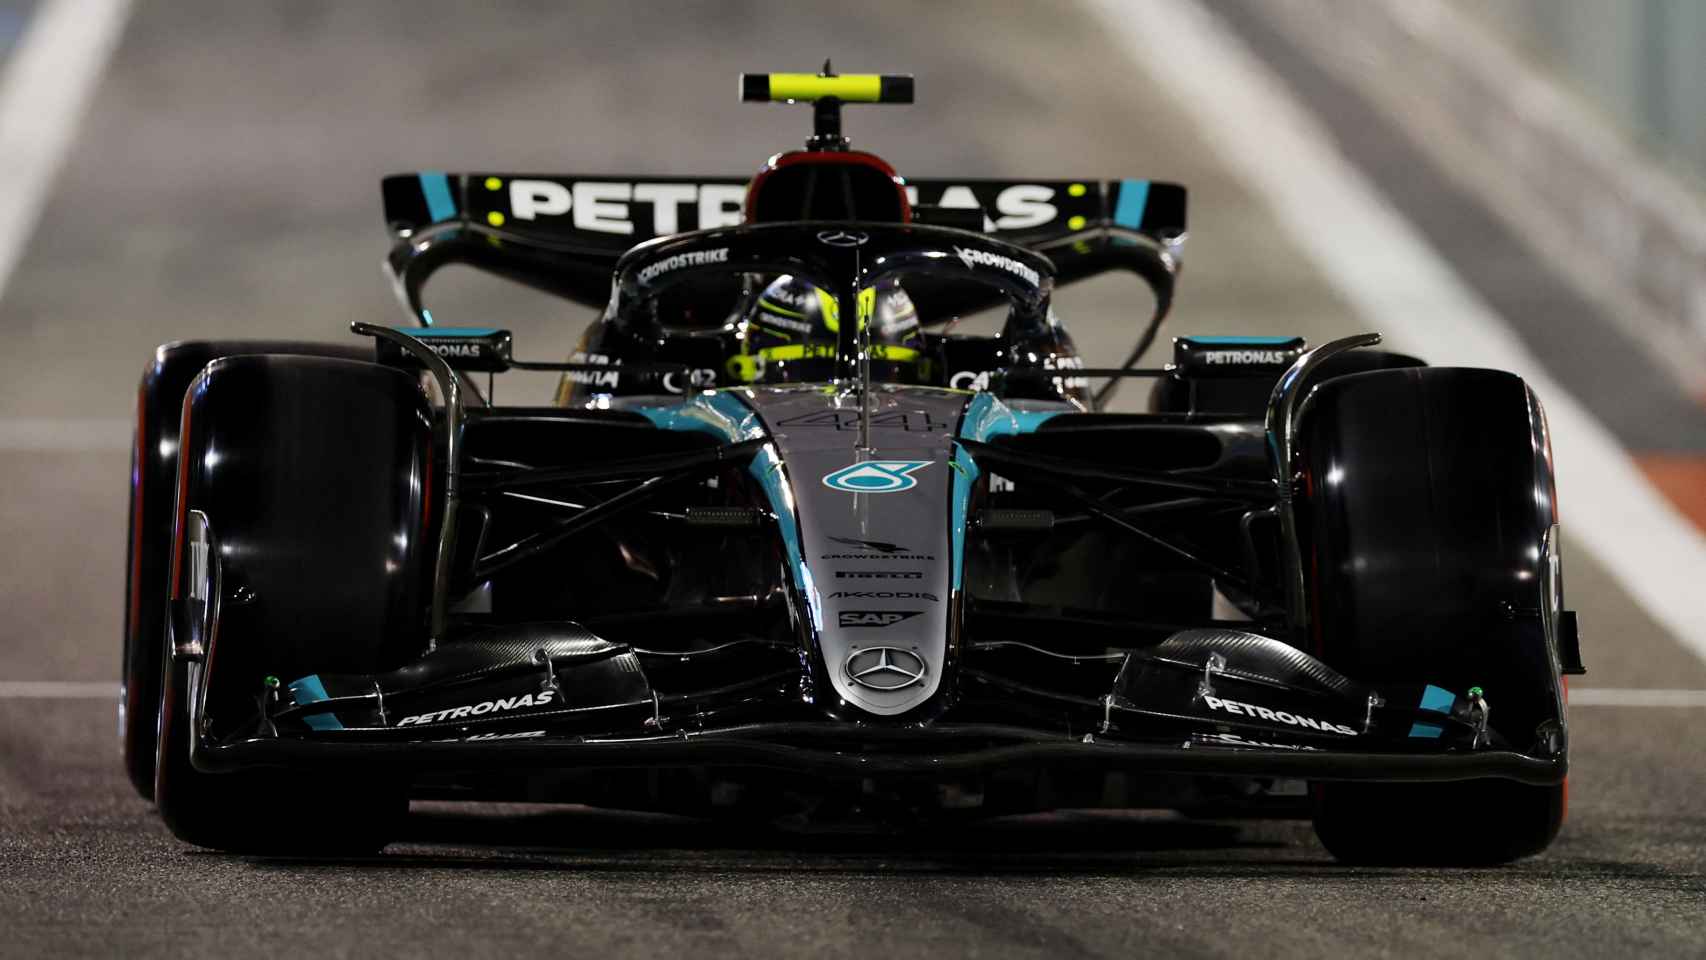 Monoplaza de Lewis Hamilton durante el Gran Premio de Baréin de este fin de semana.